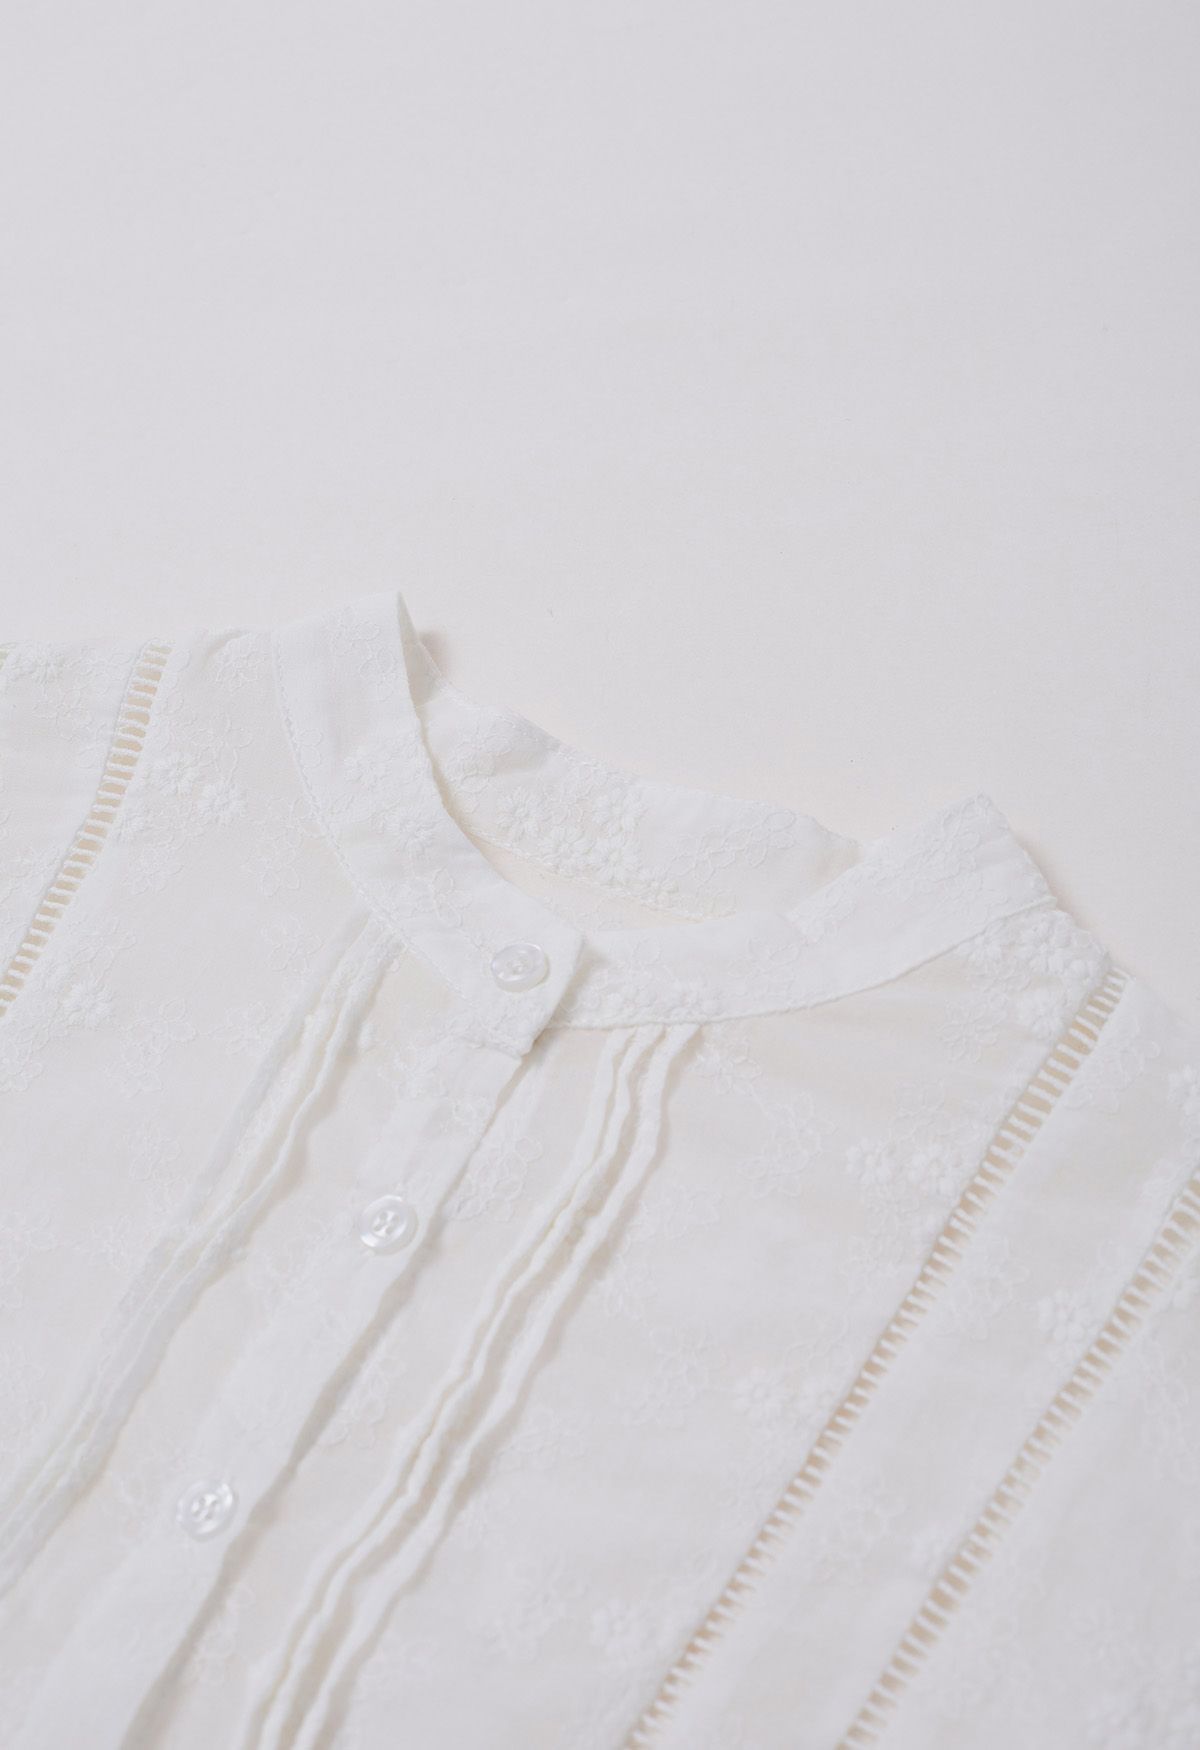 Camisa con botones y pinzas bordadas Floret en blanco